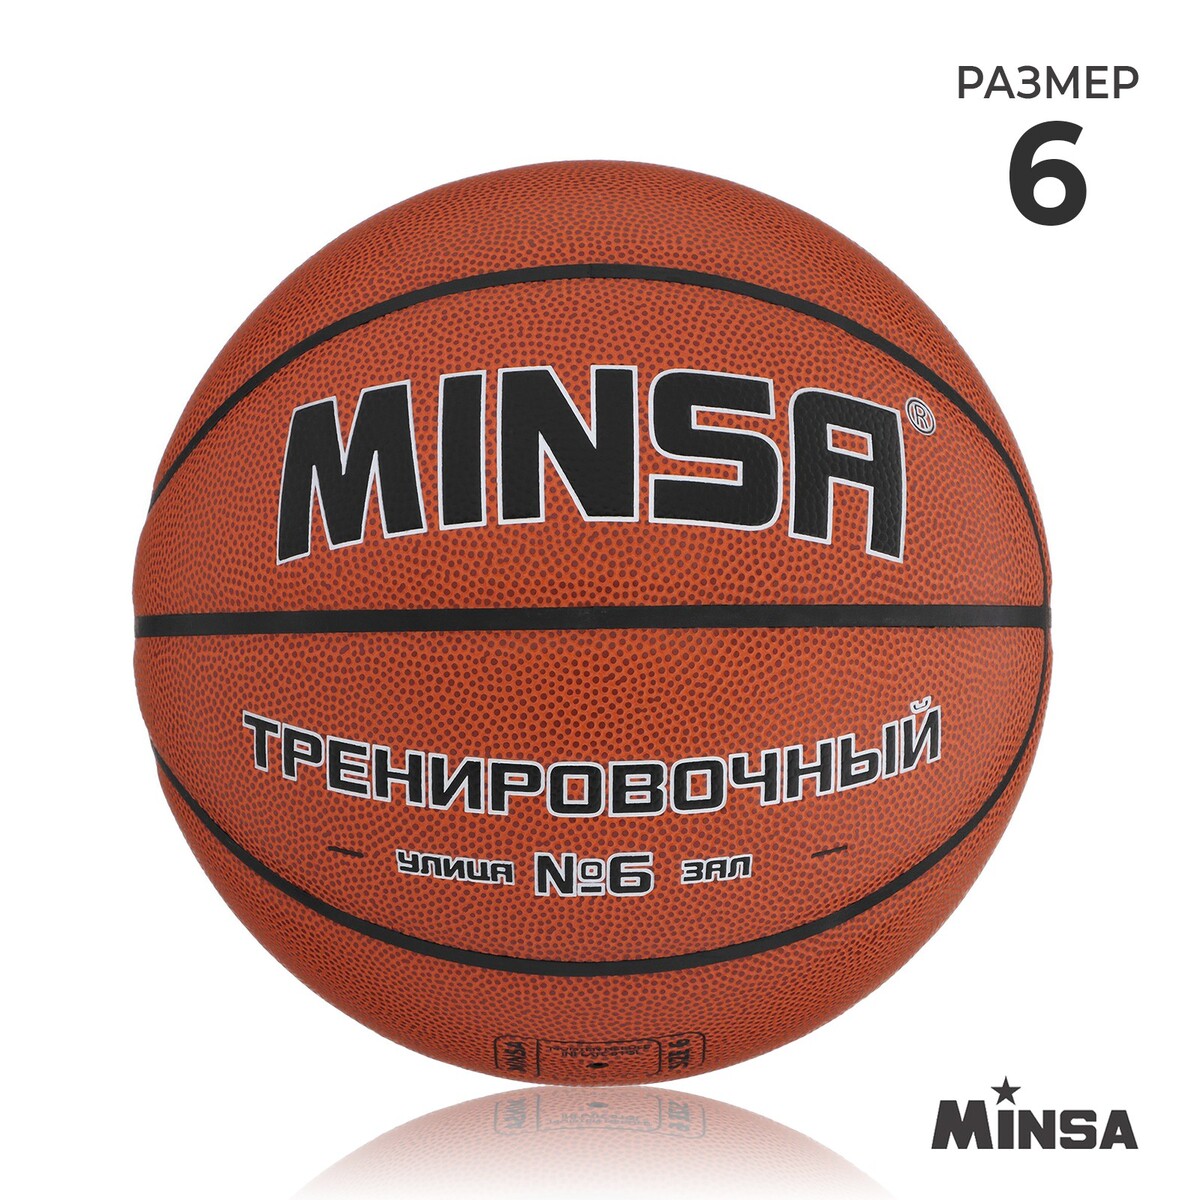 Баскетбольный мяч minsa, тренировочный, pu, клееный, 8 панелей, р. 6 баскетбольный мяч minsa тренировочный pu клееный 8 панелей р 6